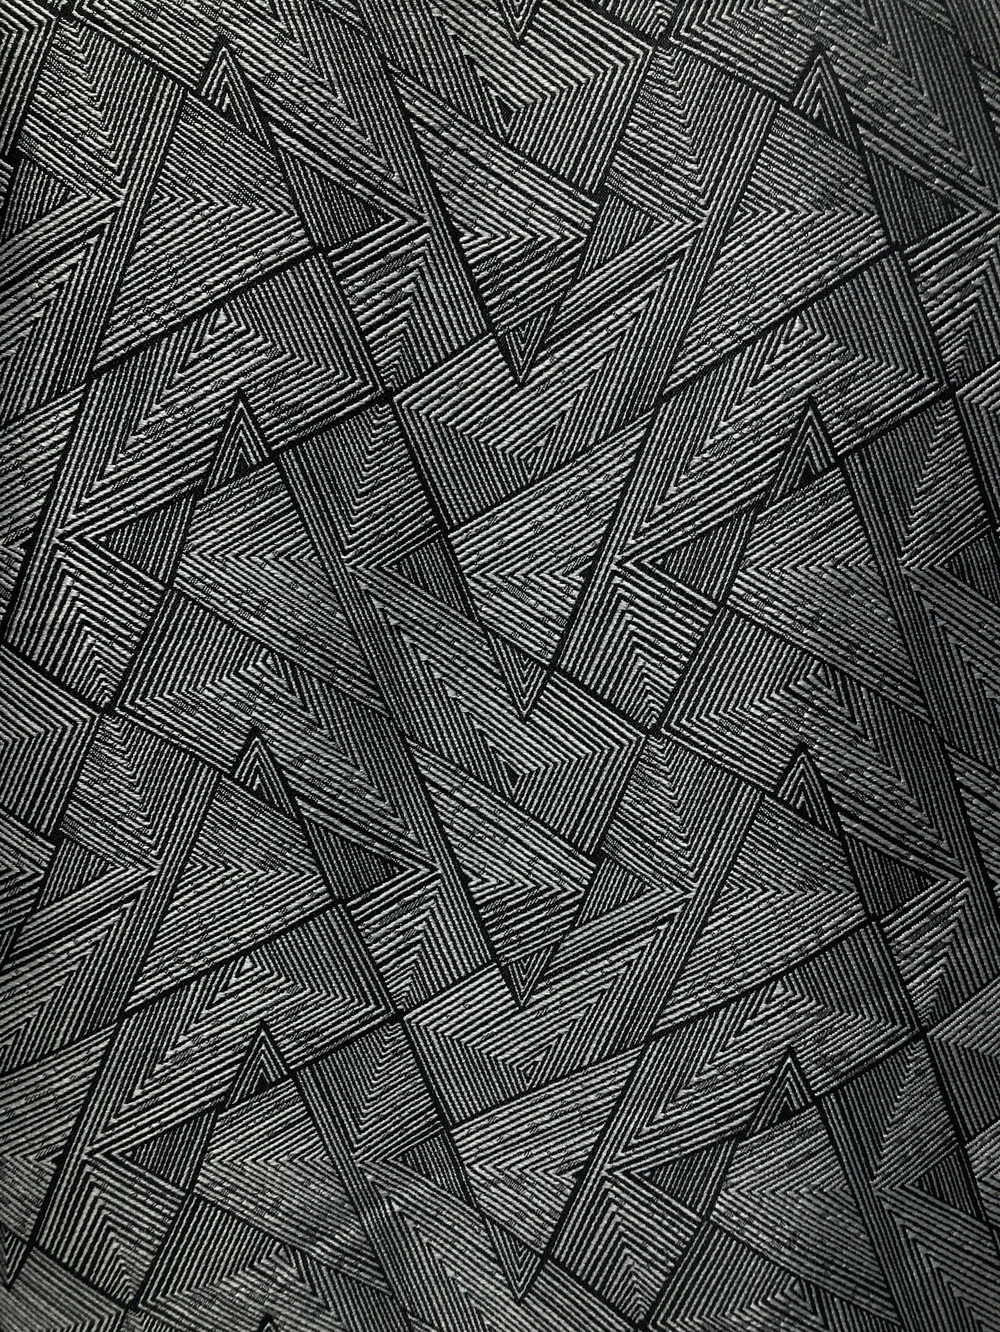 Ткань портьерная Треугольник, цвет серый, арткул 327599